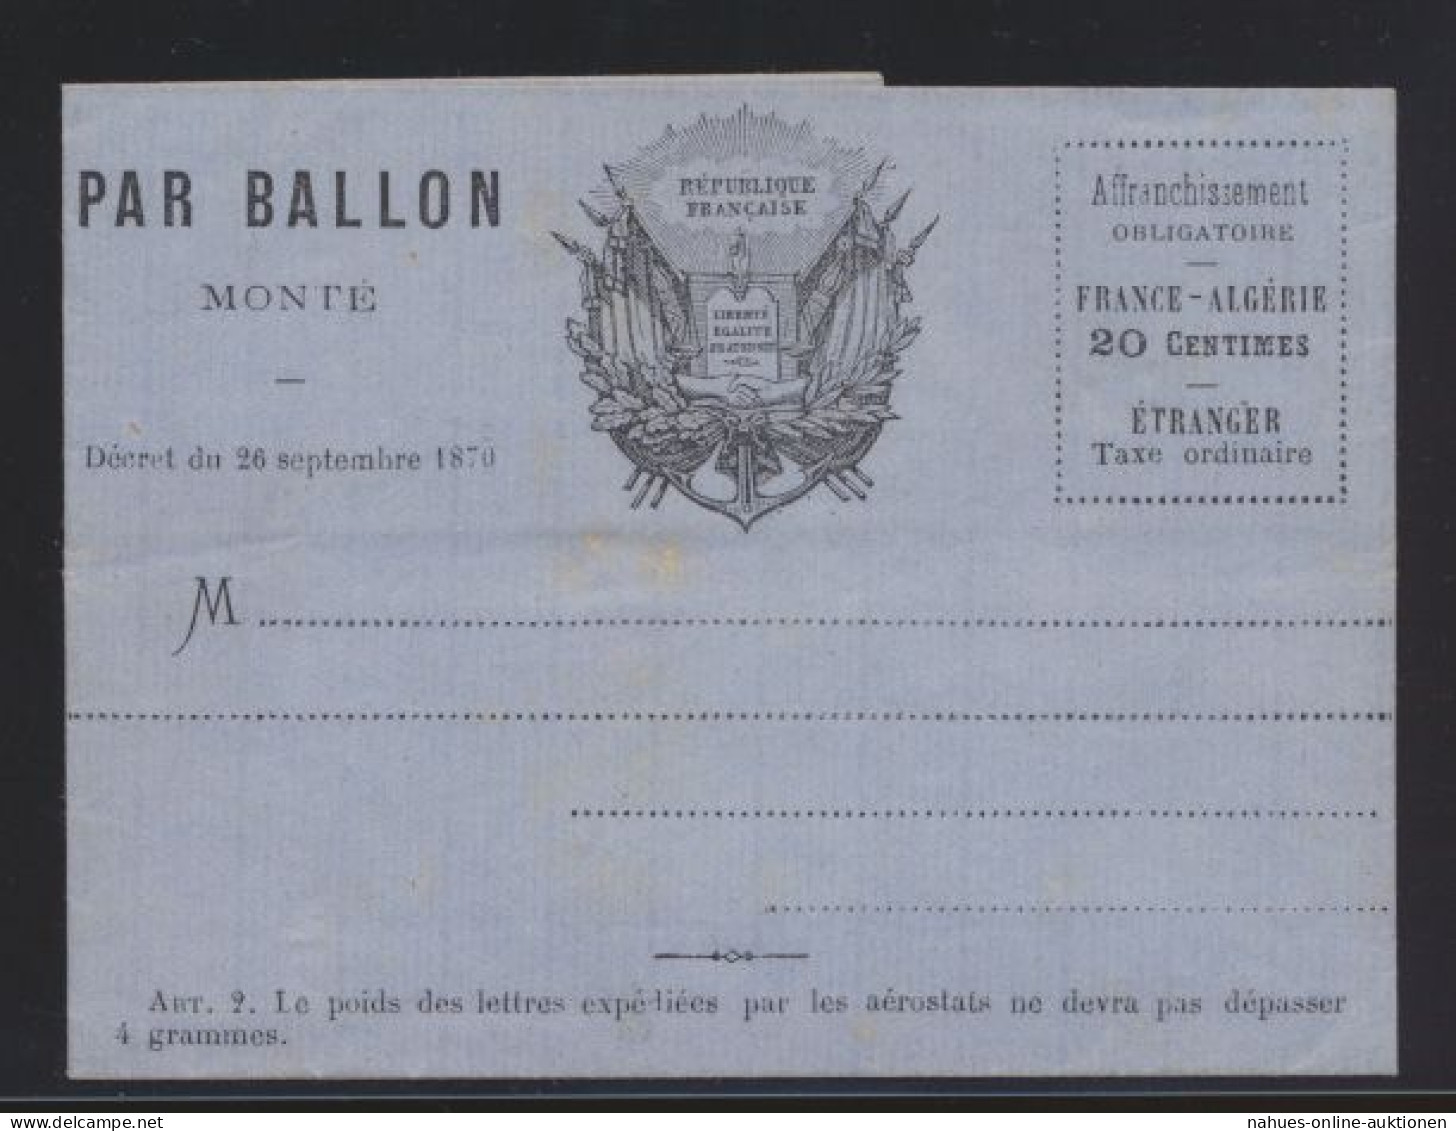 Flugpost Air Mail Ballonpost Ballon Monte Frankreich France 20 C. Faltbrief Von - Cartas & Documentos